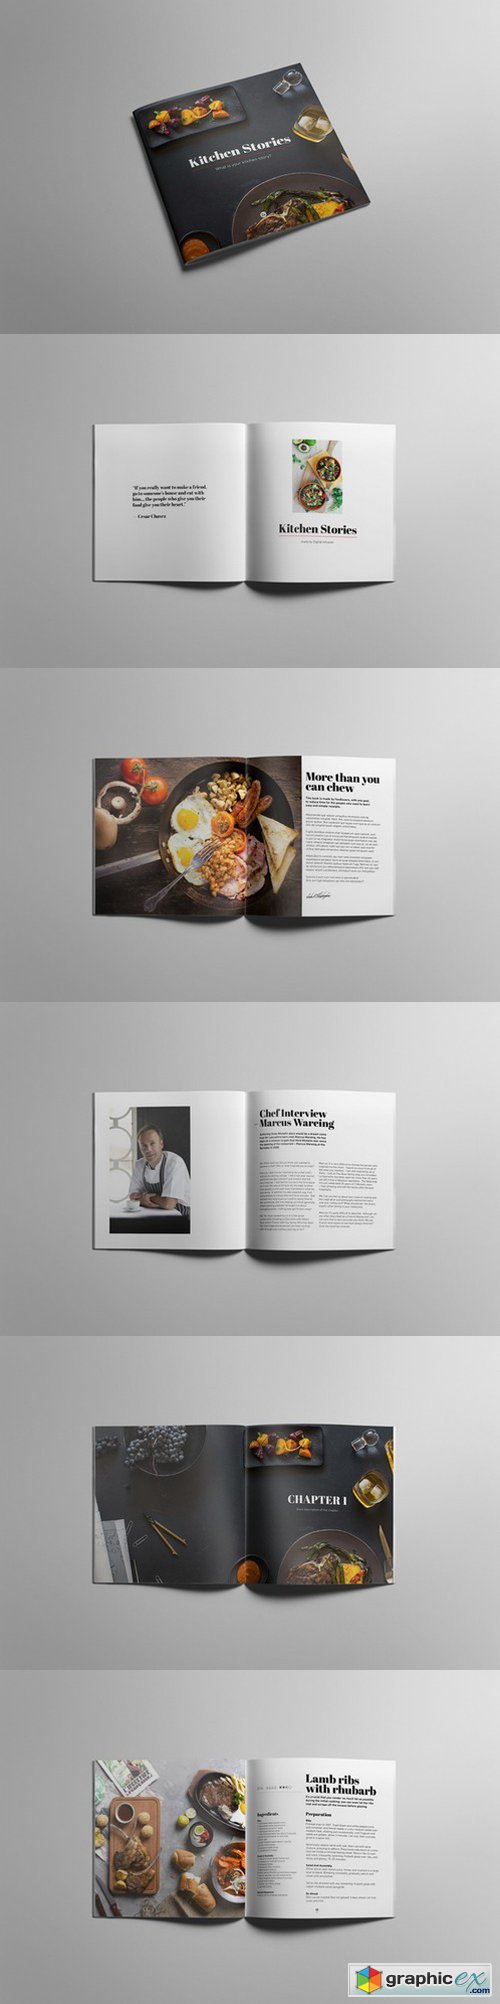 Cookbook - Kitchen Stories